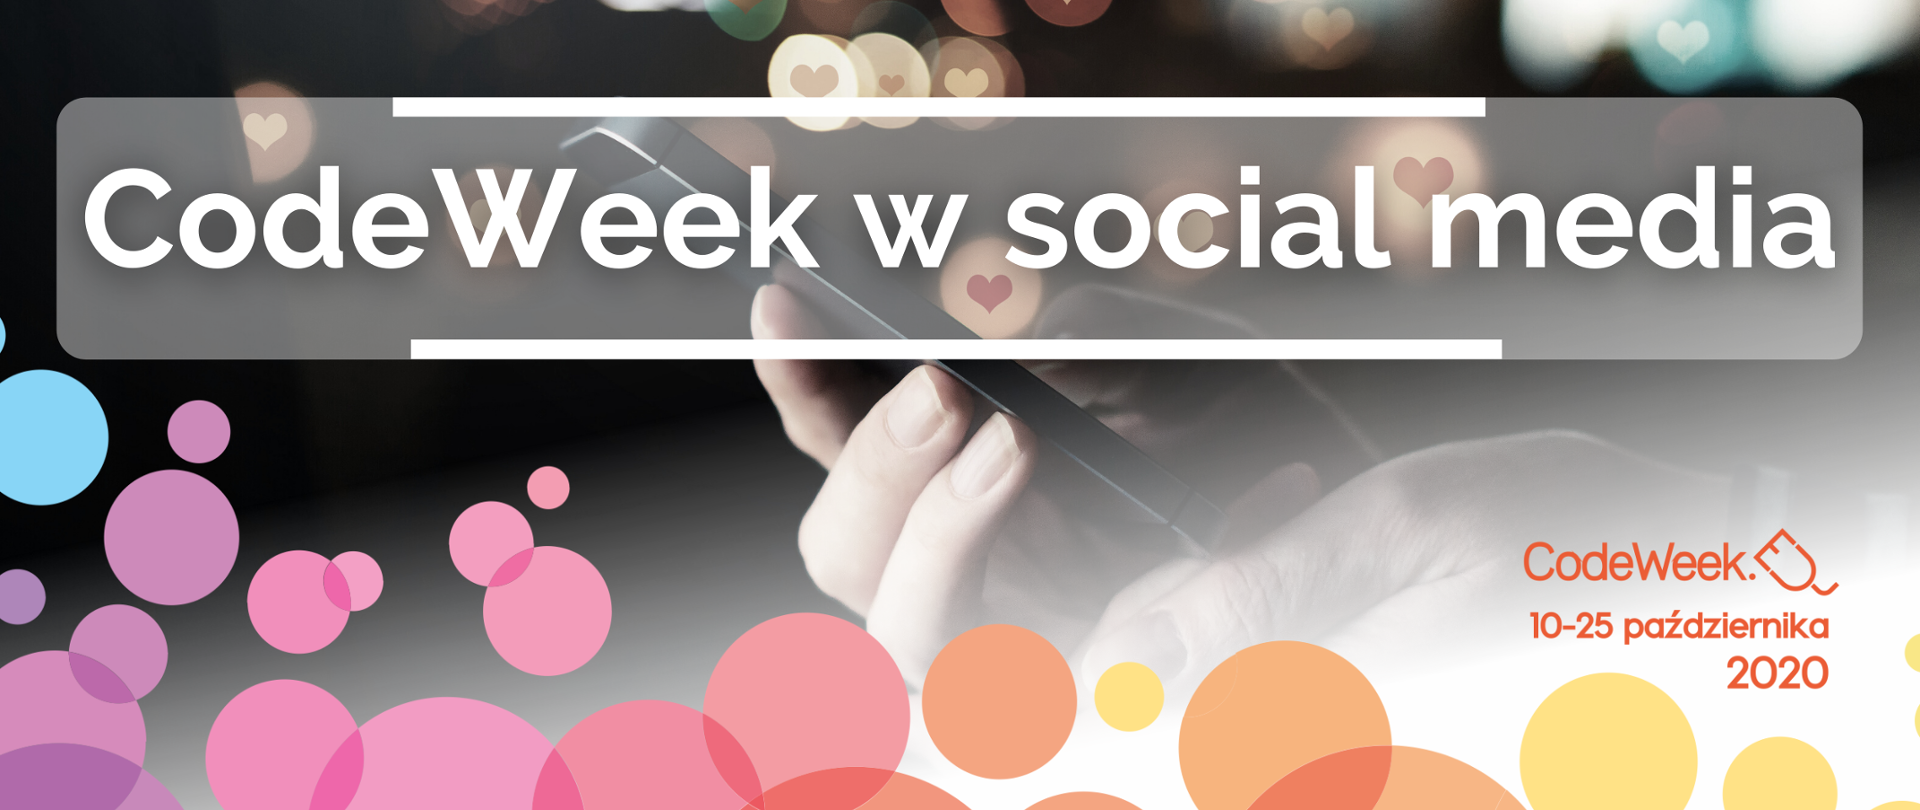 Grafika przedstawia zdjęcie dłoni trzymających telefon komórkowy, z unoszącymi się dookoła symbolami związanymi z mediami społecznościowymi. Na środku grafiki znajduje się napis: Code Week w social media. Na dole grafiki znajdują się kolorowe kółka nawiązujące do Code Week. W prawym górnym rogu znajduje się logo CodeWeek oraz data 10 - 25 października 2020. 